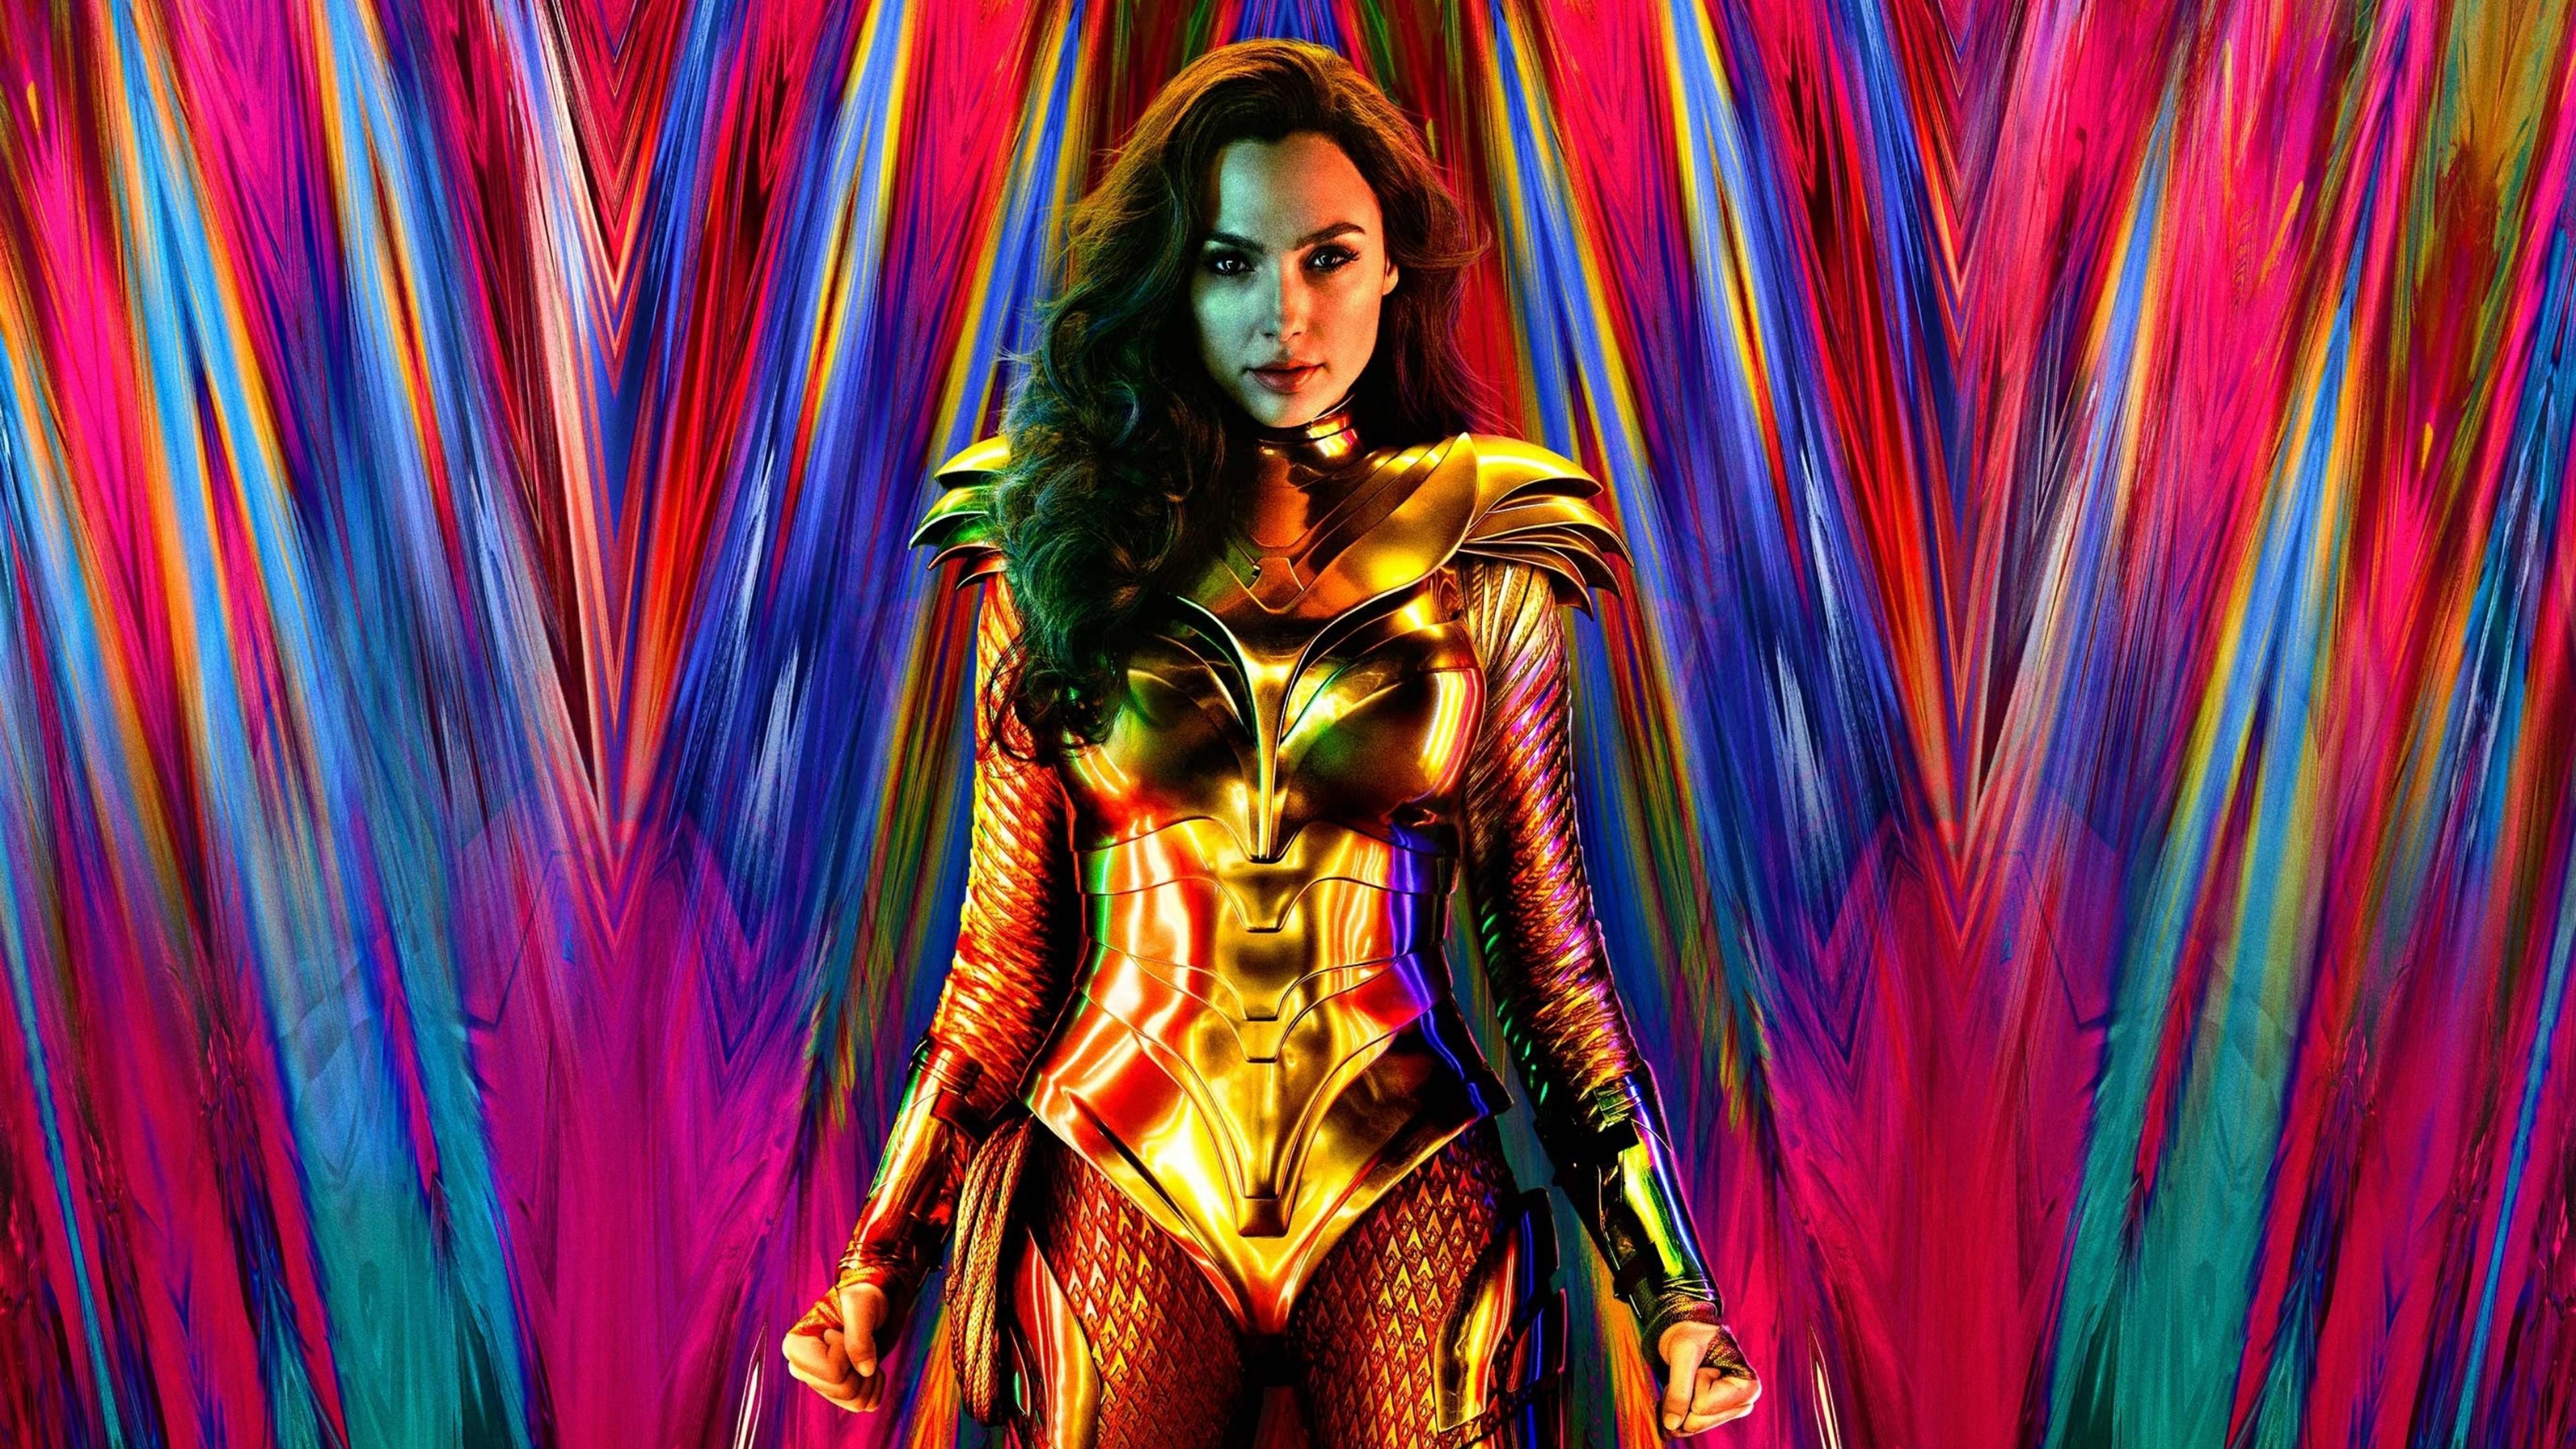 4K Wallpaper of Actress Gal Gadot in 2020 Film Wonder Woman